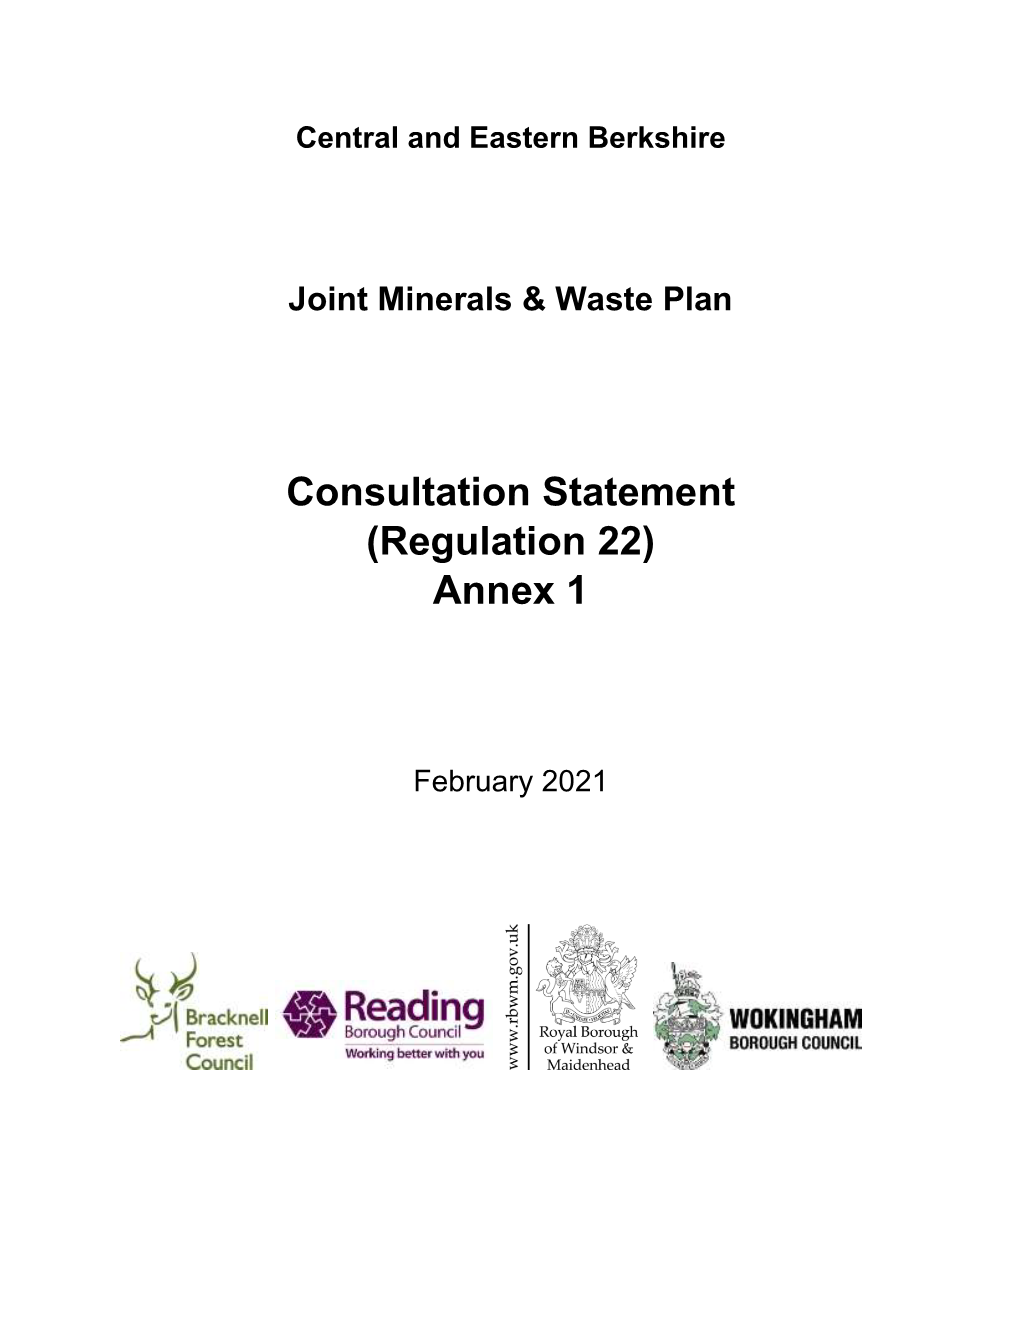 Consultation Statement (Regulation 22) Annex 1